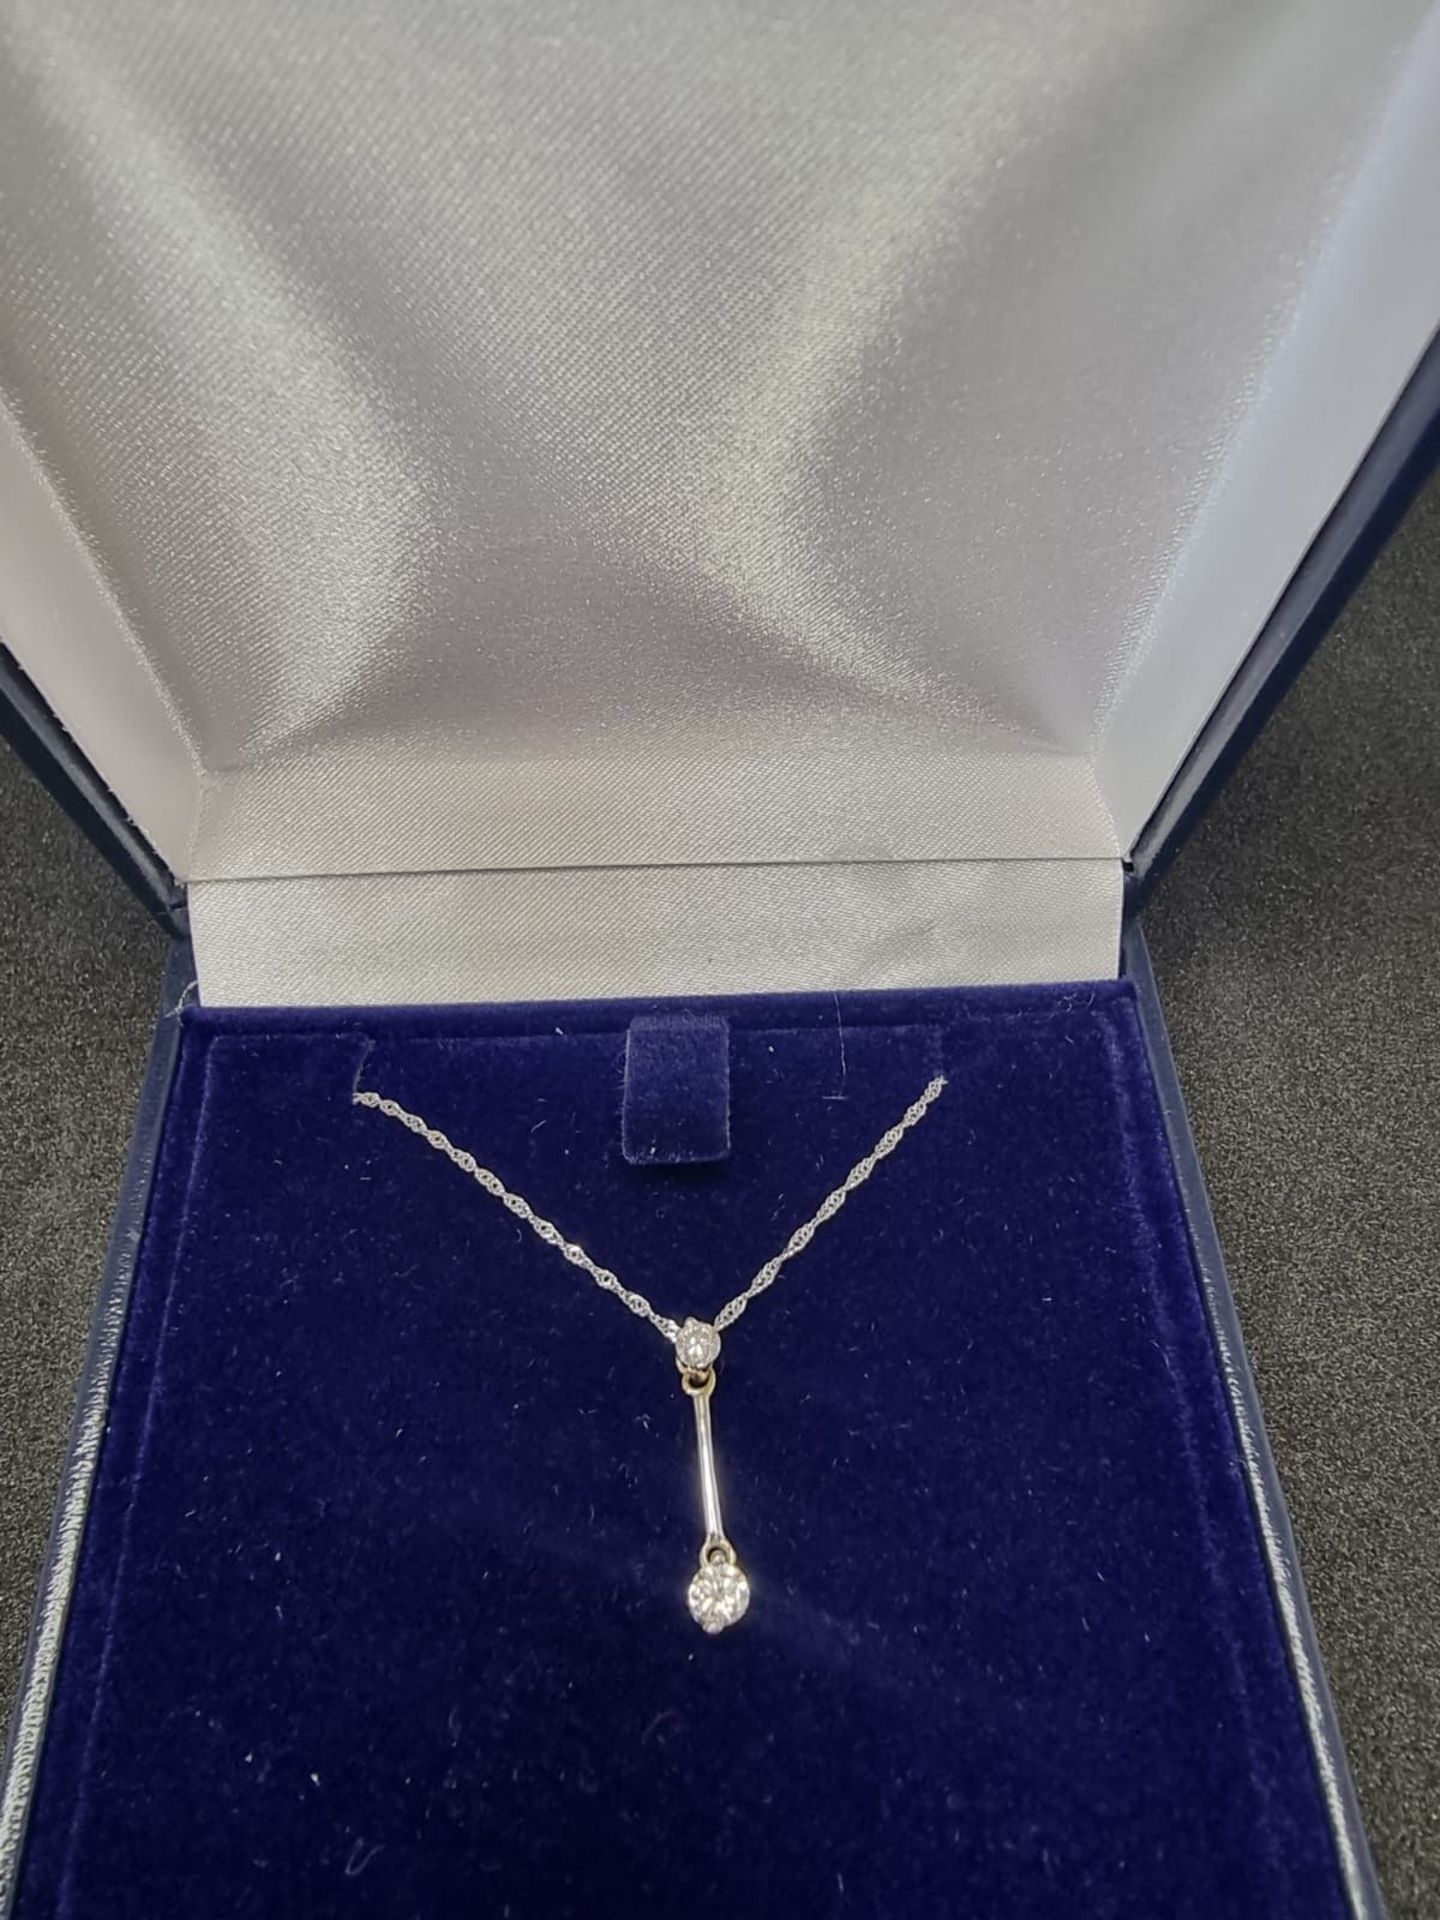 Unique 18 Carat White Gold Necklace with 0.2 Carat Diamond Drop Pendant